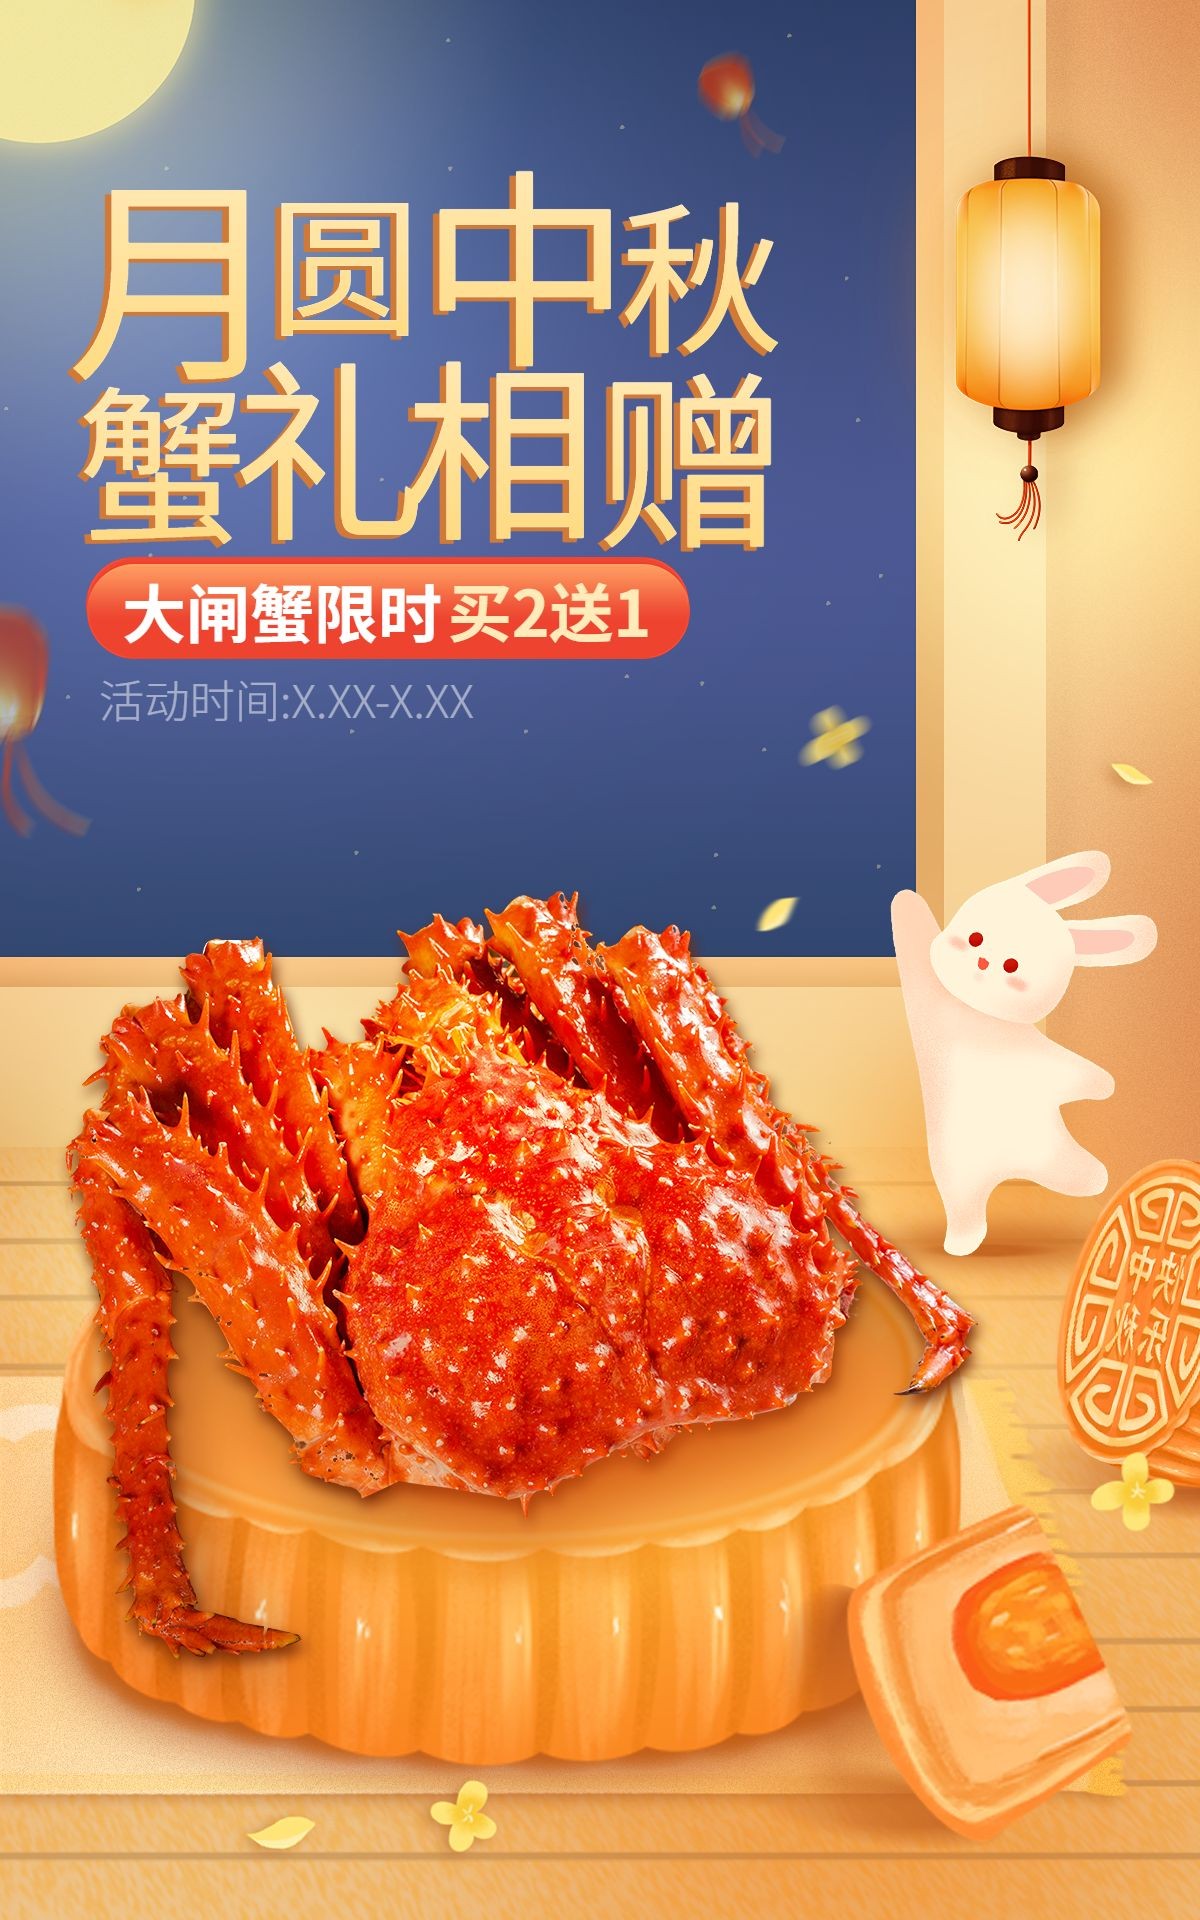 中秋节电商食品大闸蟹促销活动手绘海报